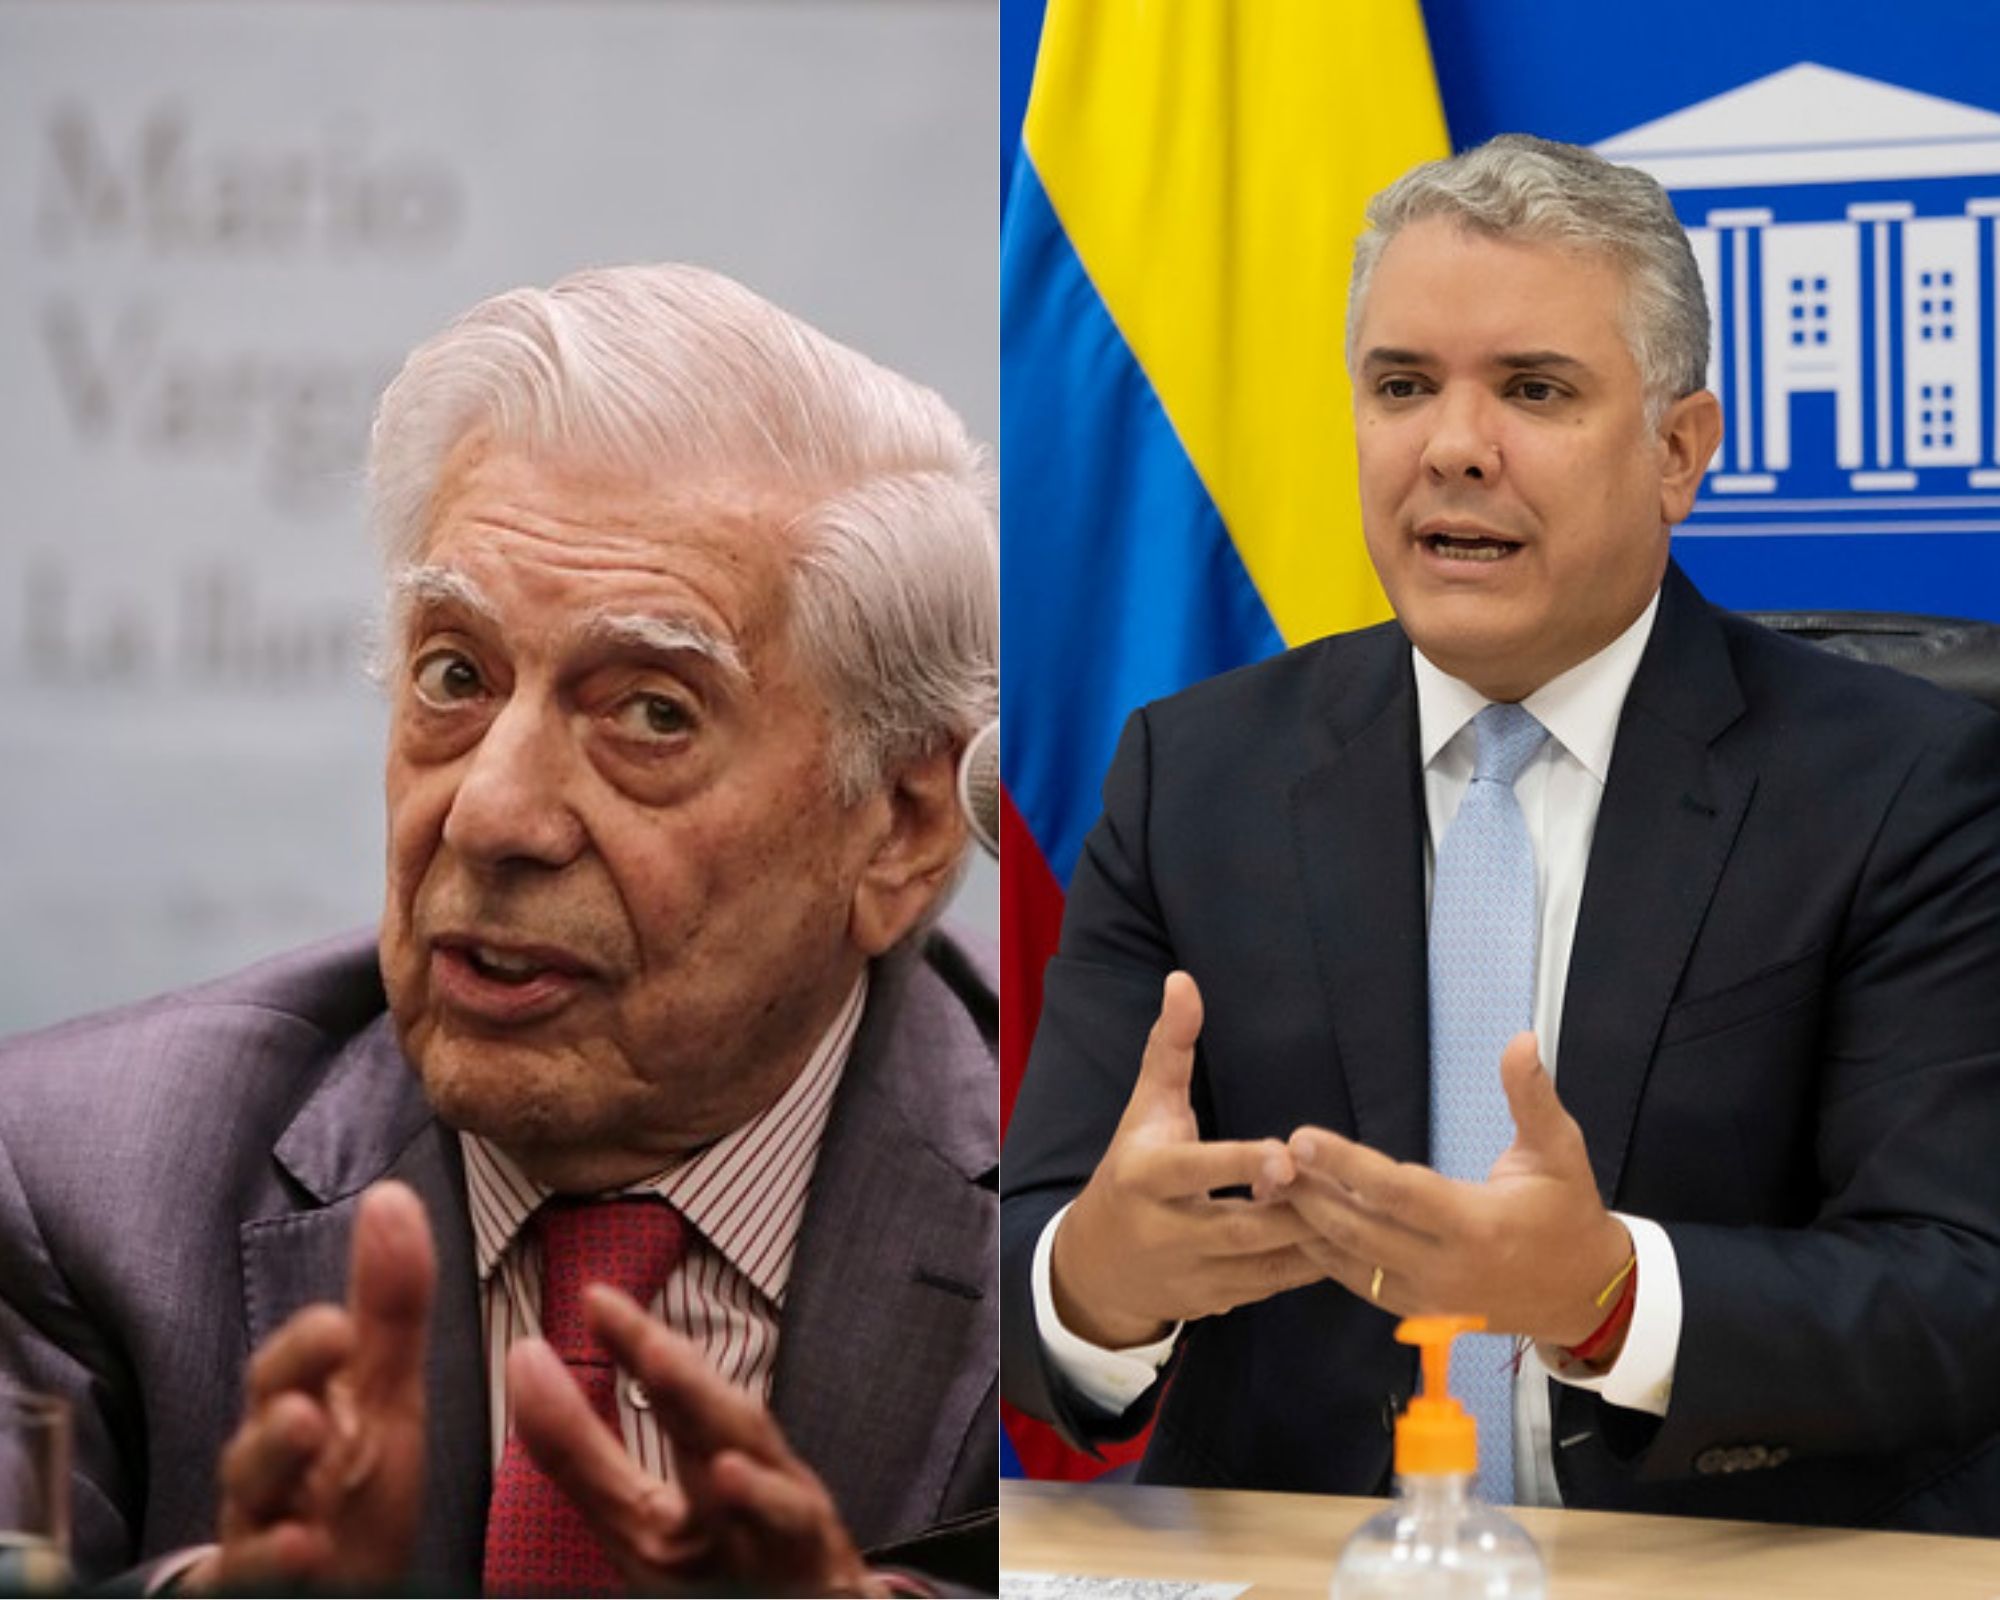 A la izquierda, Mario Vargas Llosa, premio Nobel de Literatura; y a la derecha, Iván Duque, Presidente de Colombia. - Colprensa.